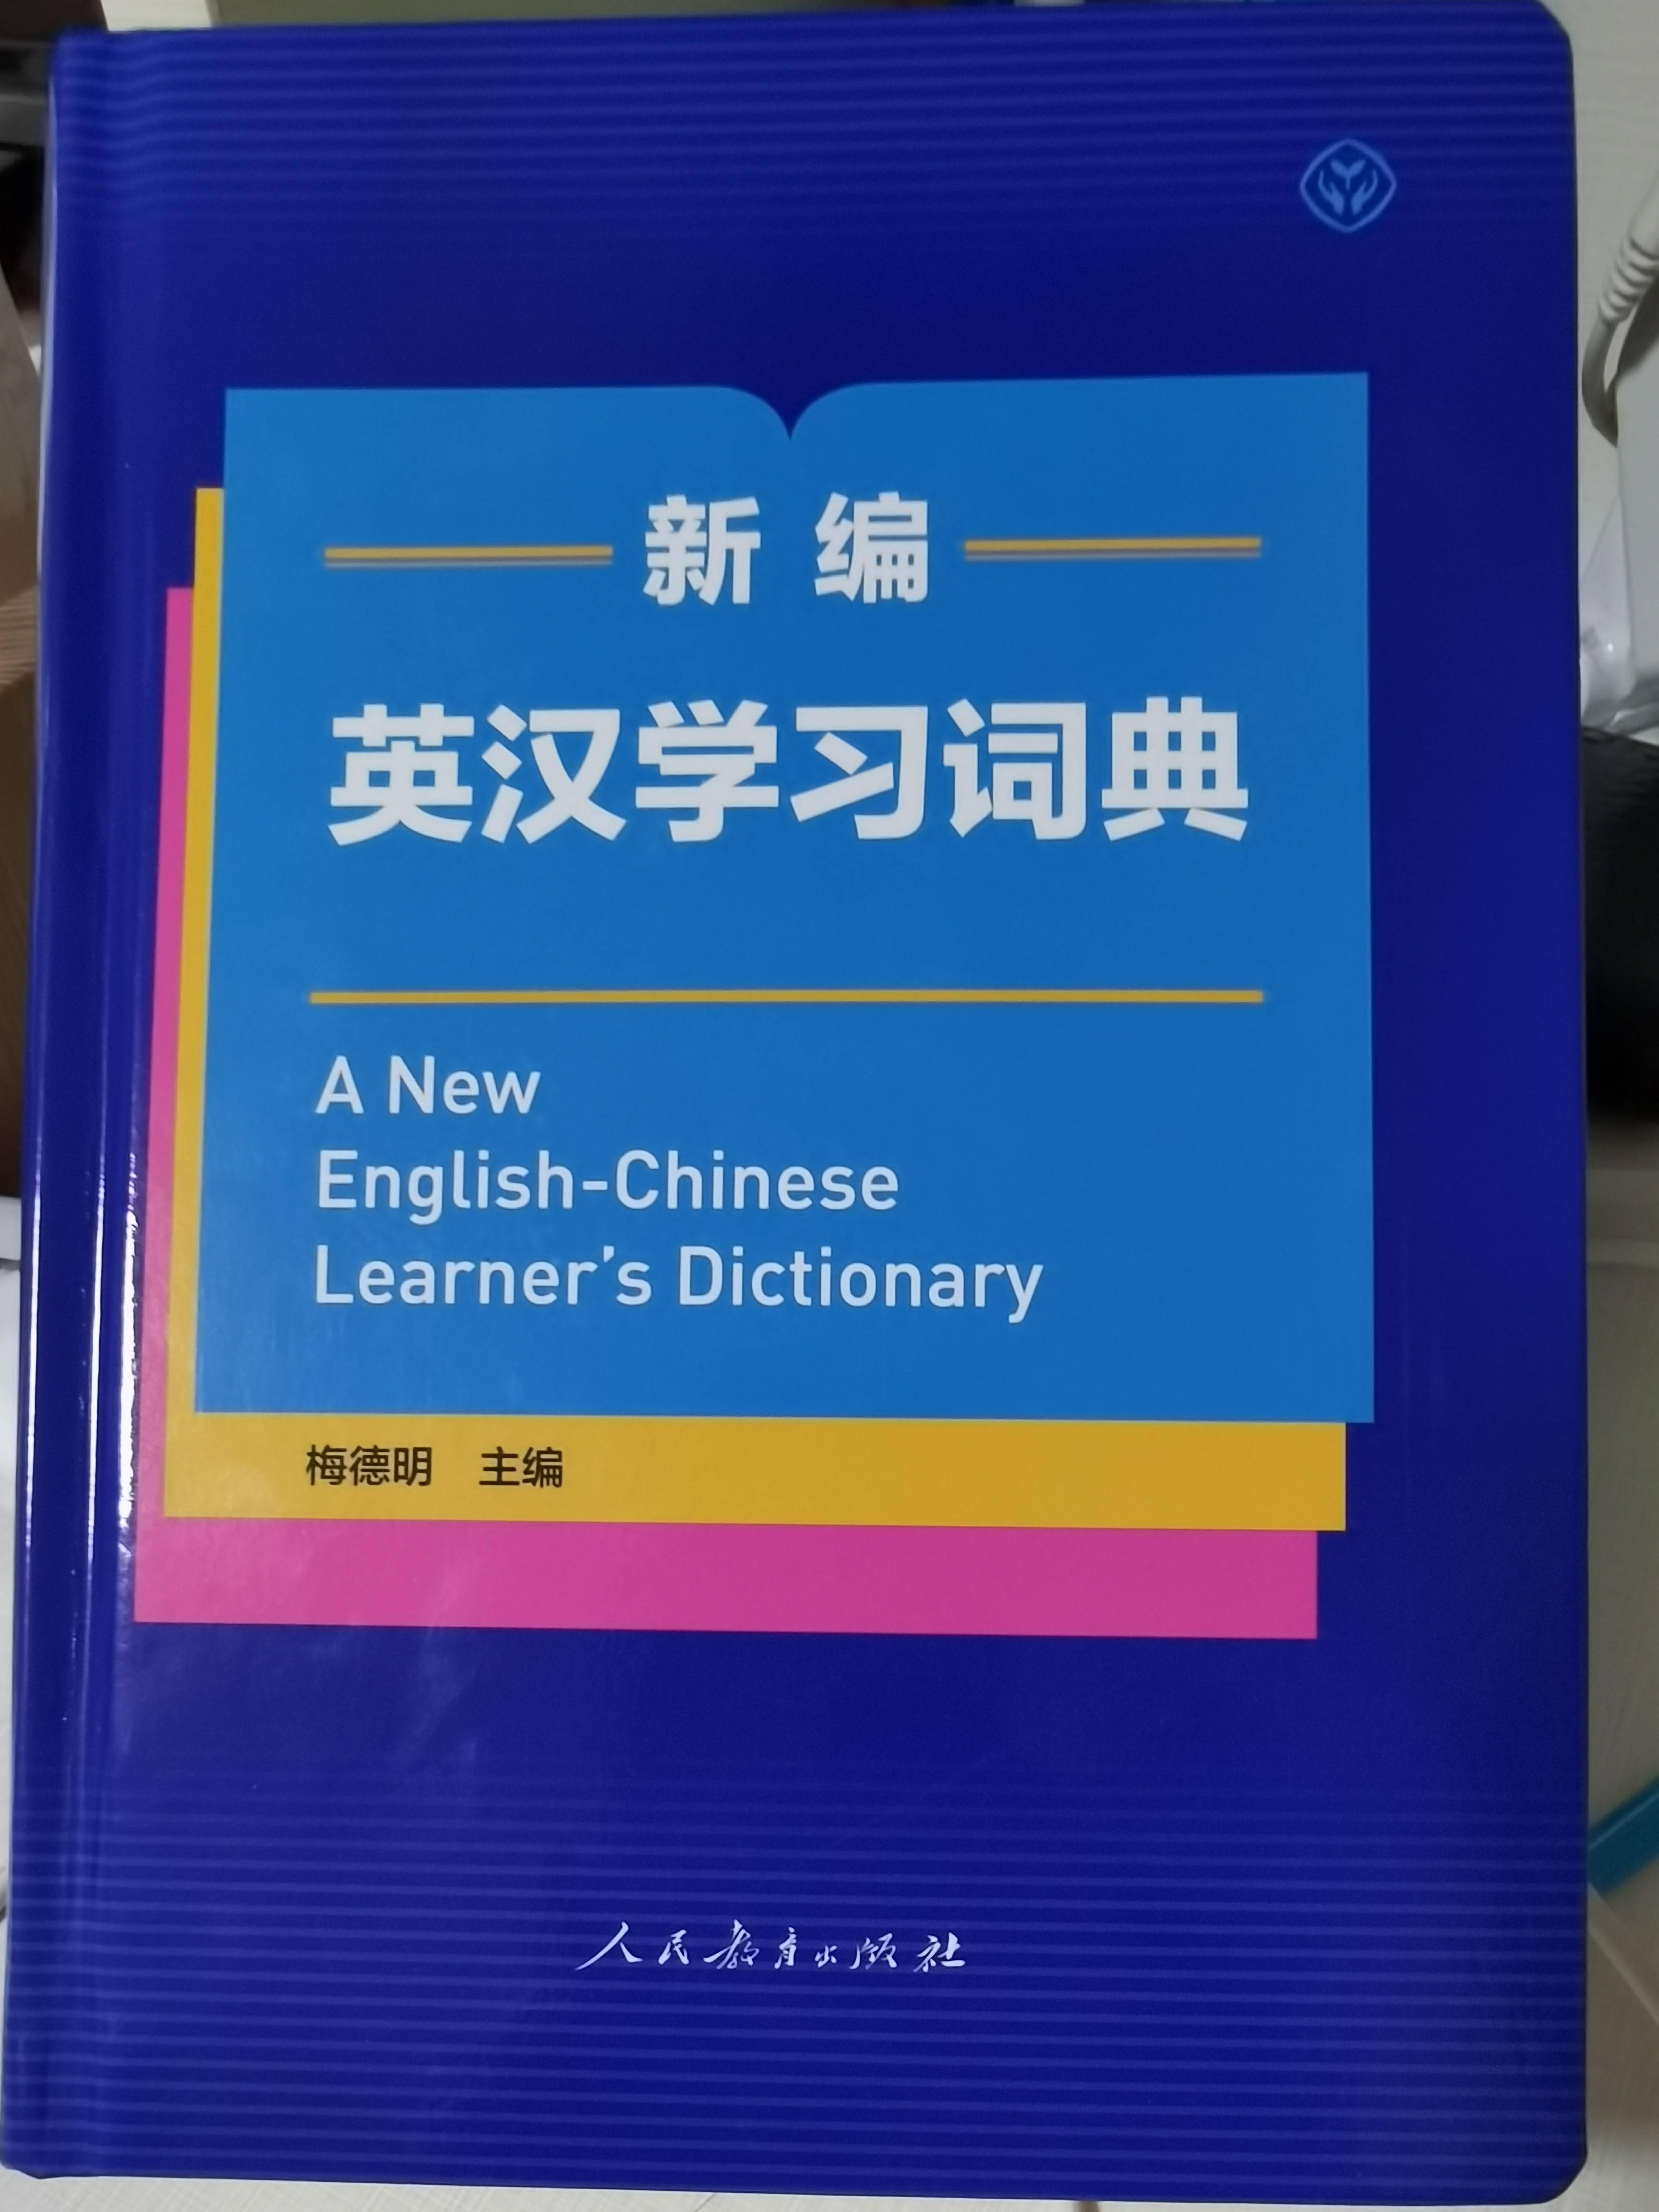 国内首部原创英汉学习词典发布 中国内涵 是一大特色 英语